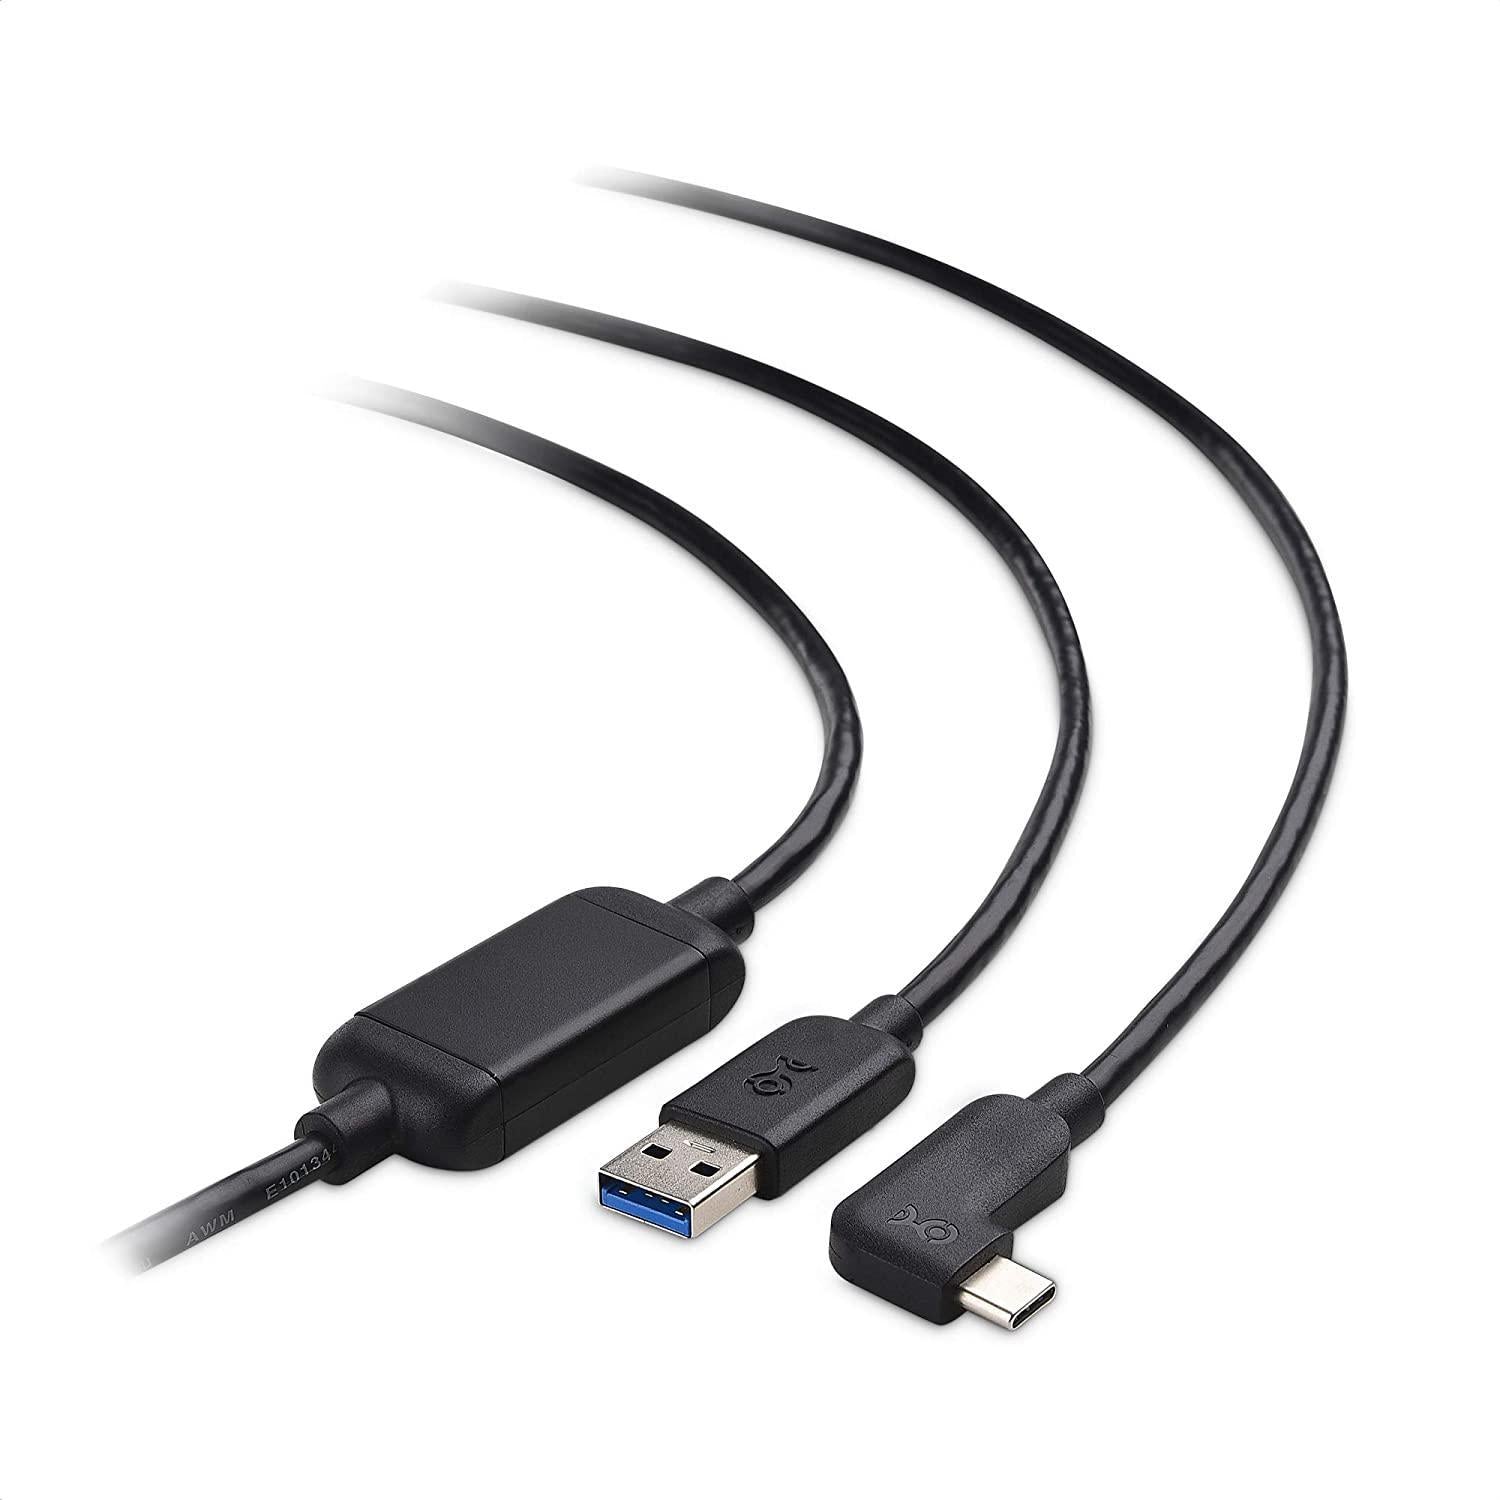 Cable Matters aktiv 5m USB-C til USB-A VR Link-kabel for Oculus Quest 2 USB3.2 Gen1 5Gbps 3A Super Speed VR Link-kabel